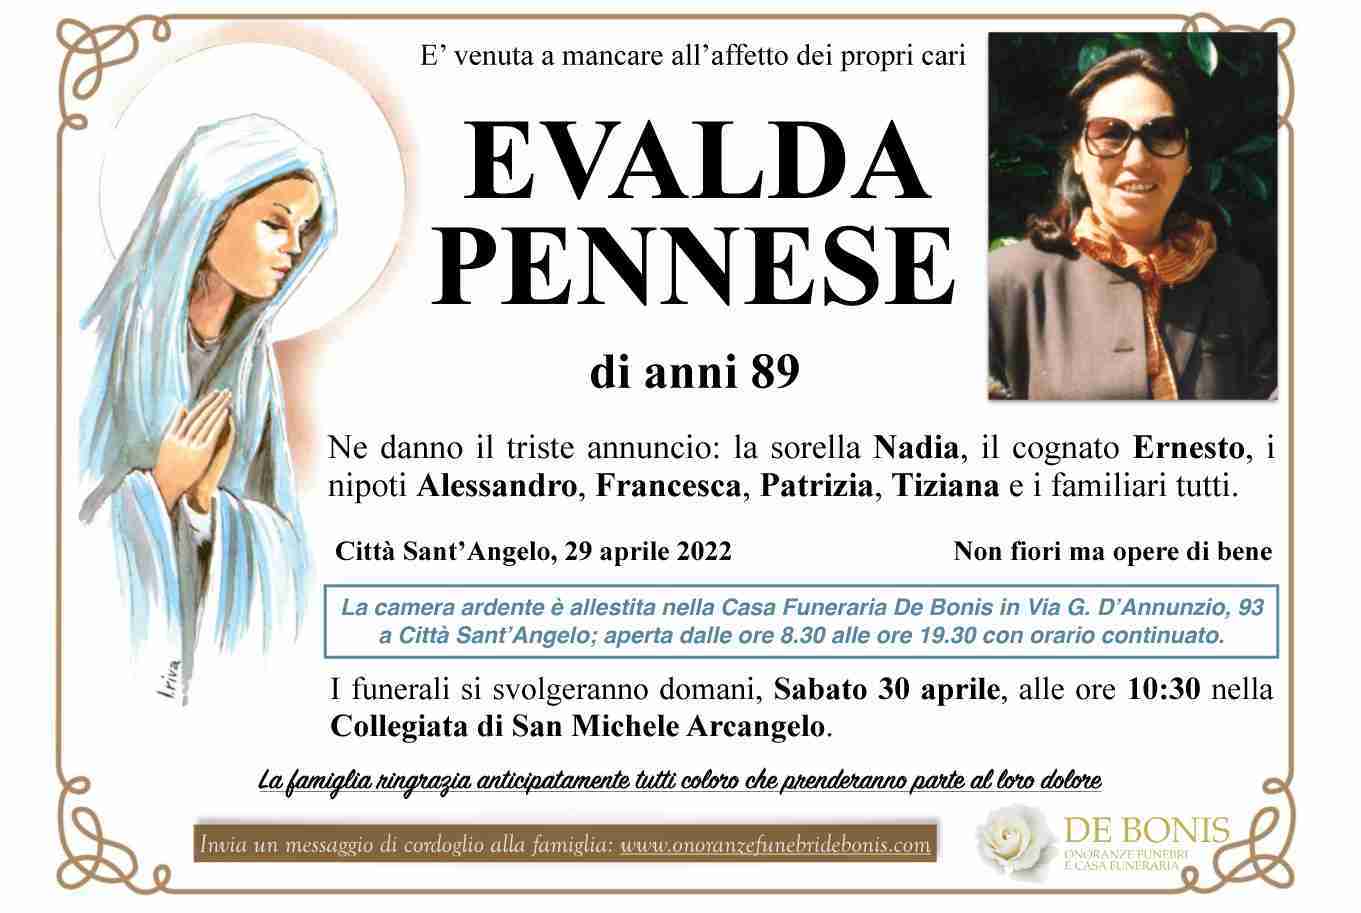 Evalda Pennese